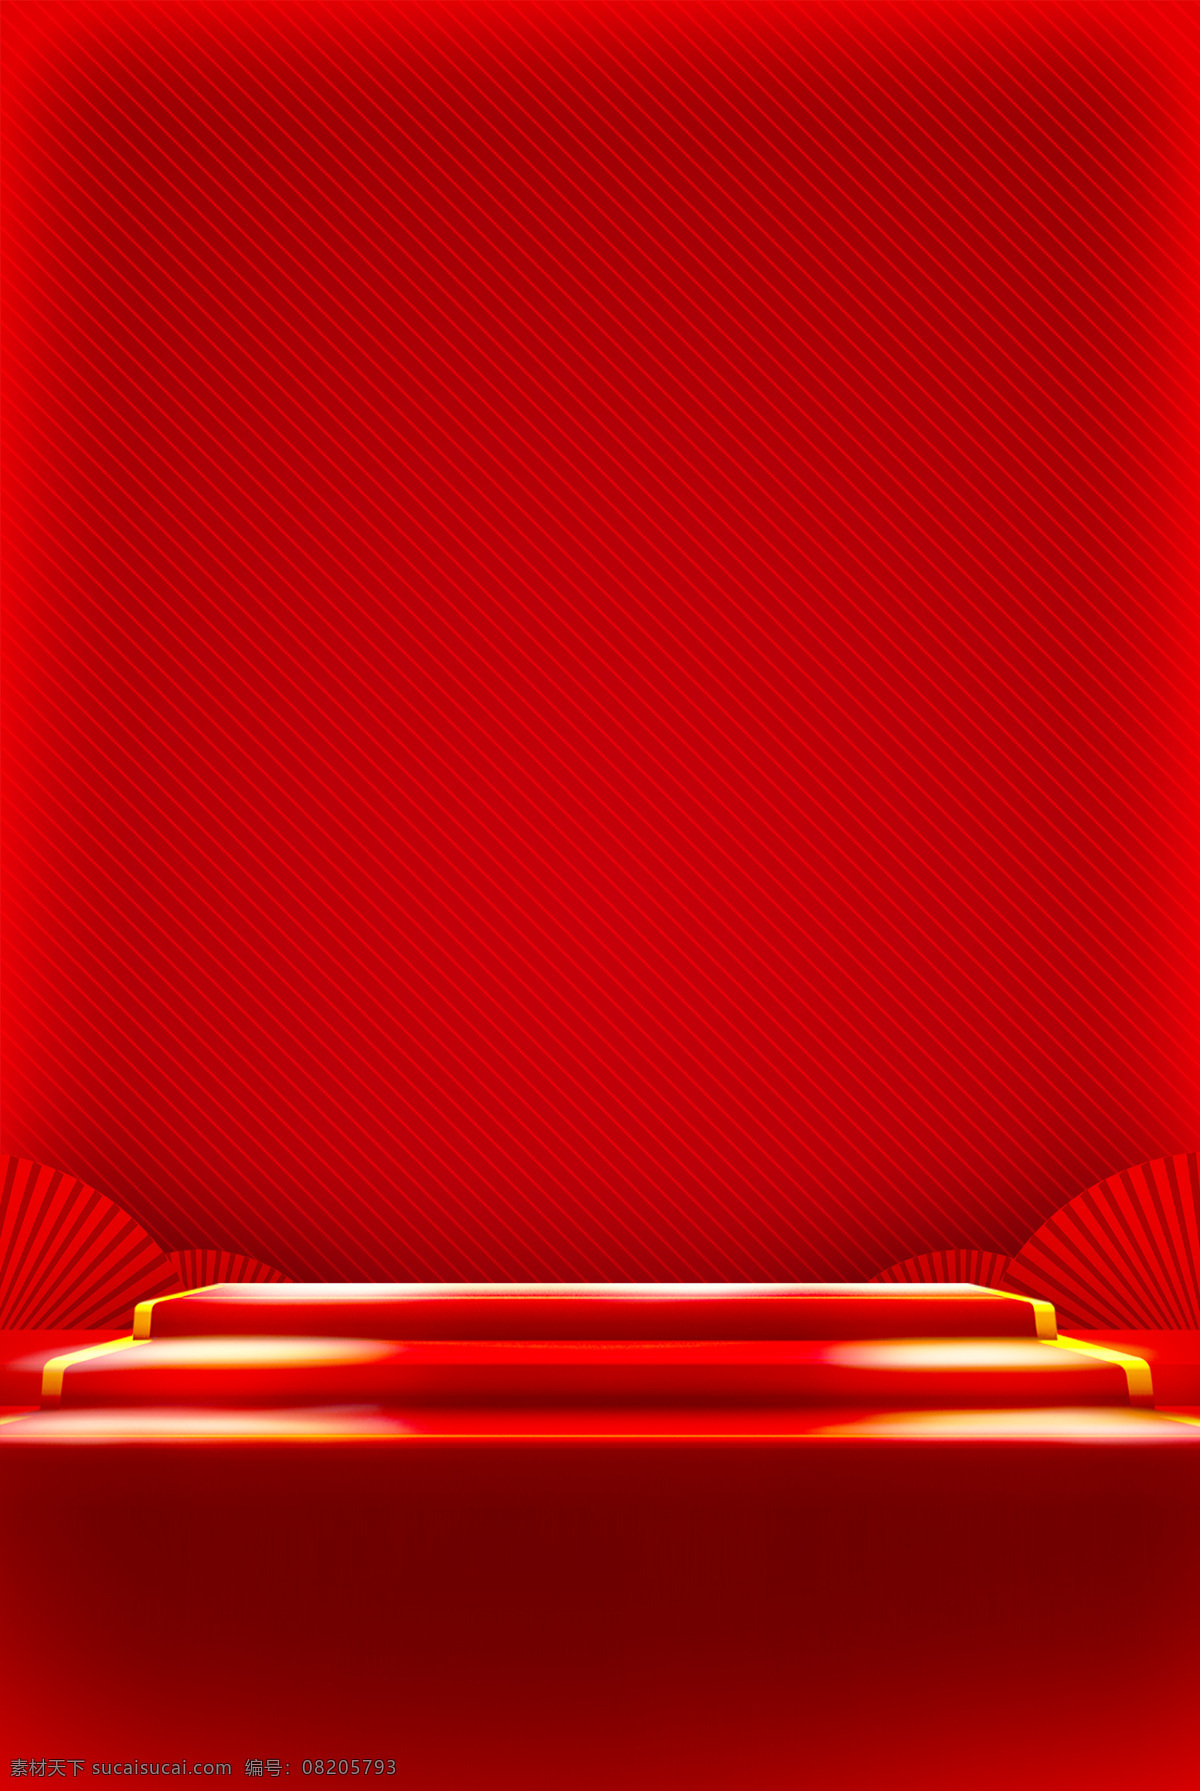 中国 红 条纹 阶梯 背景 大气 广告 海报 纹理 喜庆 折扇 中国红